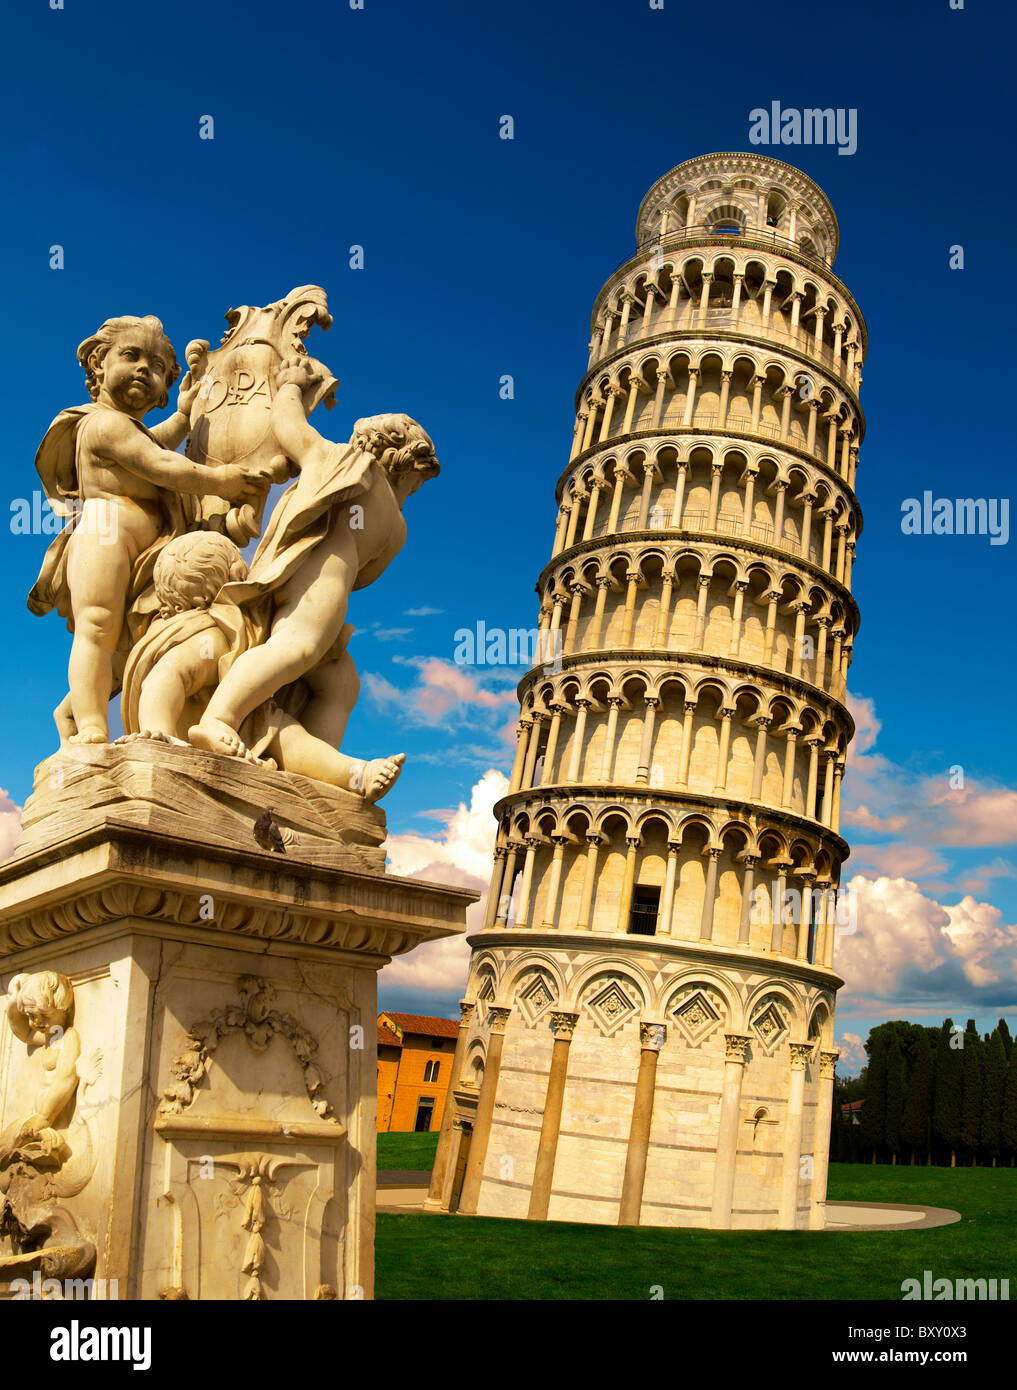 Schiefer Turm von Pisa - ein UNESCO-Weltkulturerbe, Piazza del Miracoli, Pisa, Italien Stockfoto